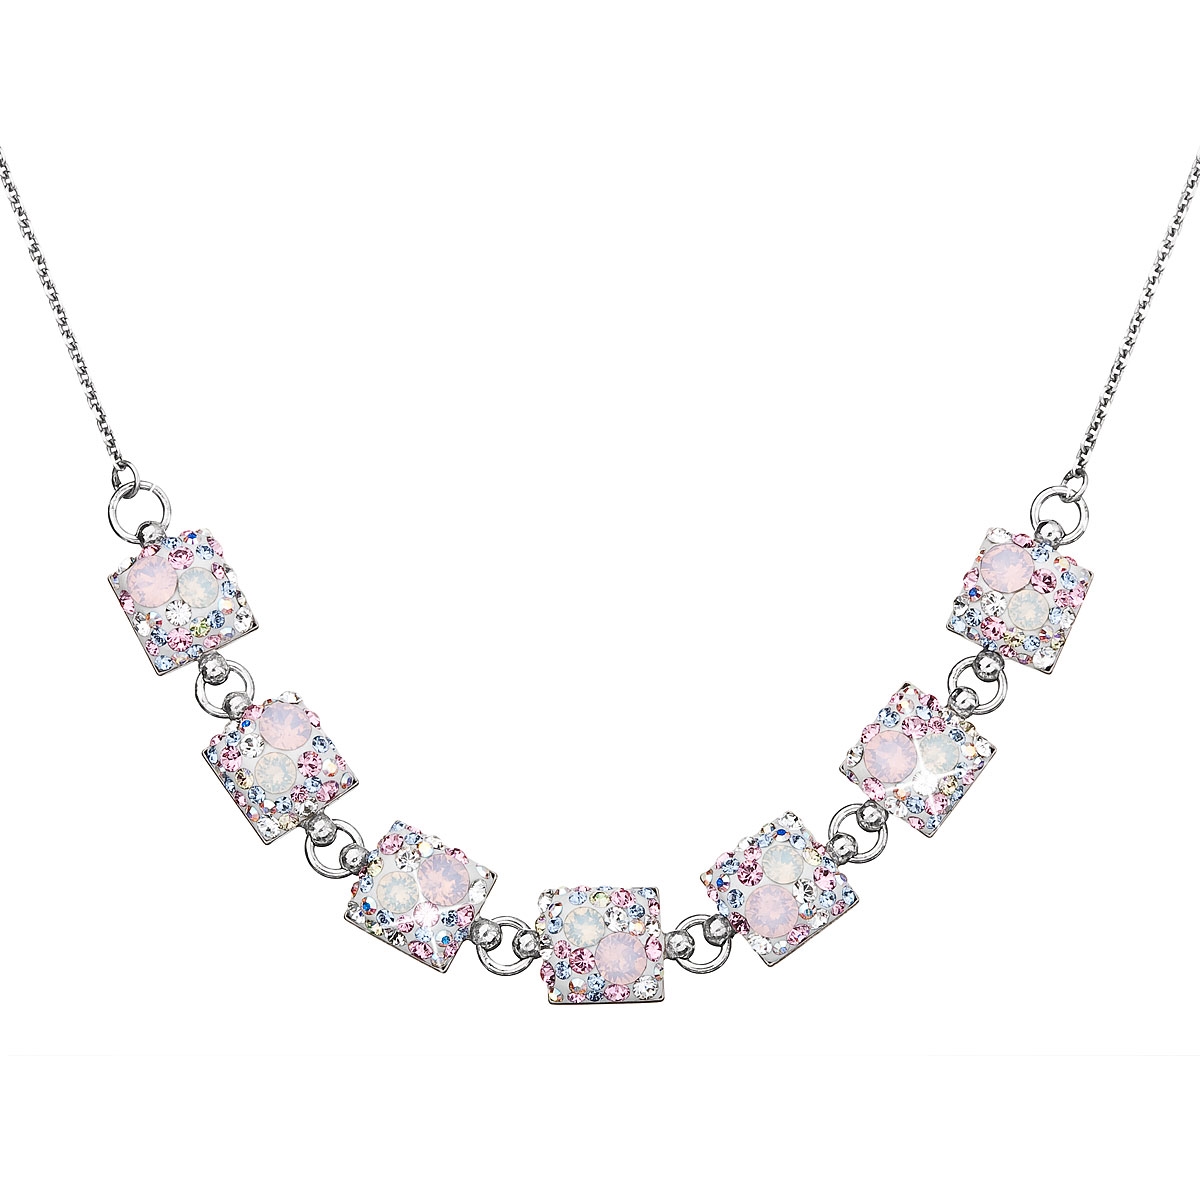 Strieborný náhrdelník s kryštálmi Crystals from Swarovski ® Magic Rose